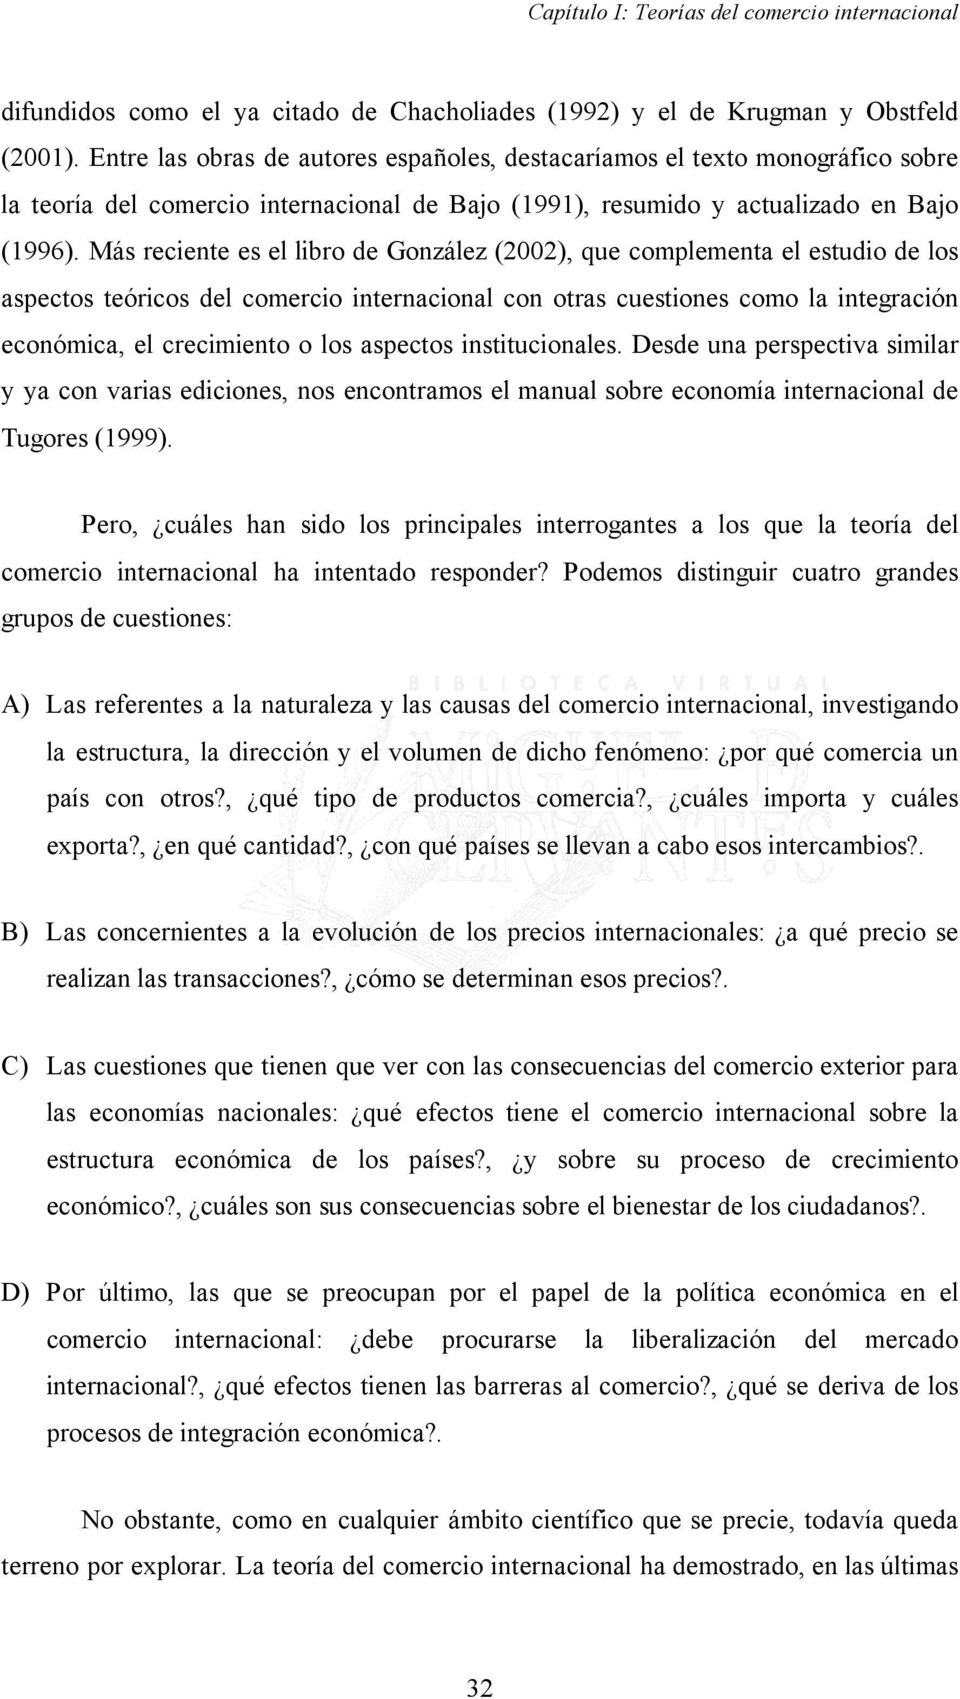 Más reciente es el libro de González (2002), que complementa el estudio de los aspectos teóricos del comercio internacional con otras cuestiones como la integración económica, el crecimiento o los